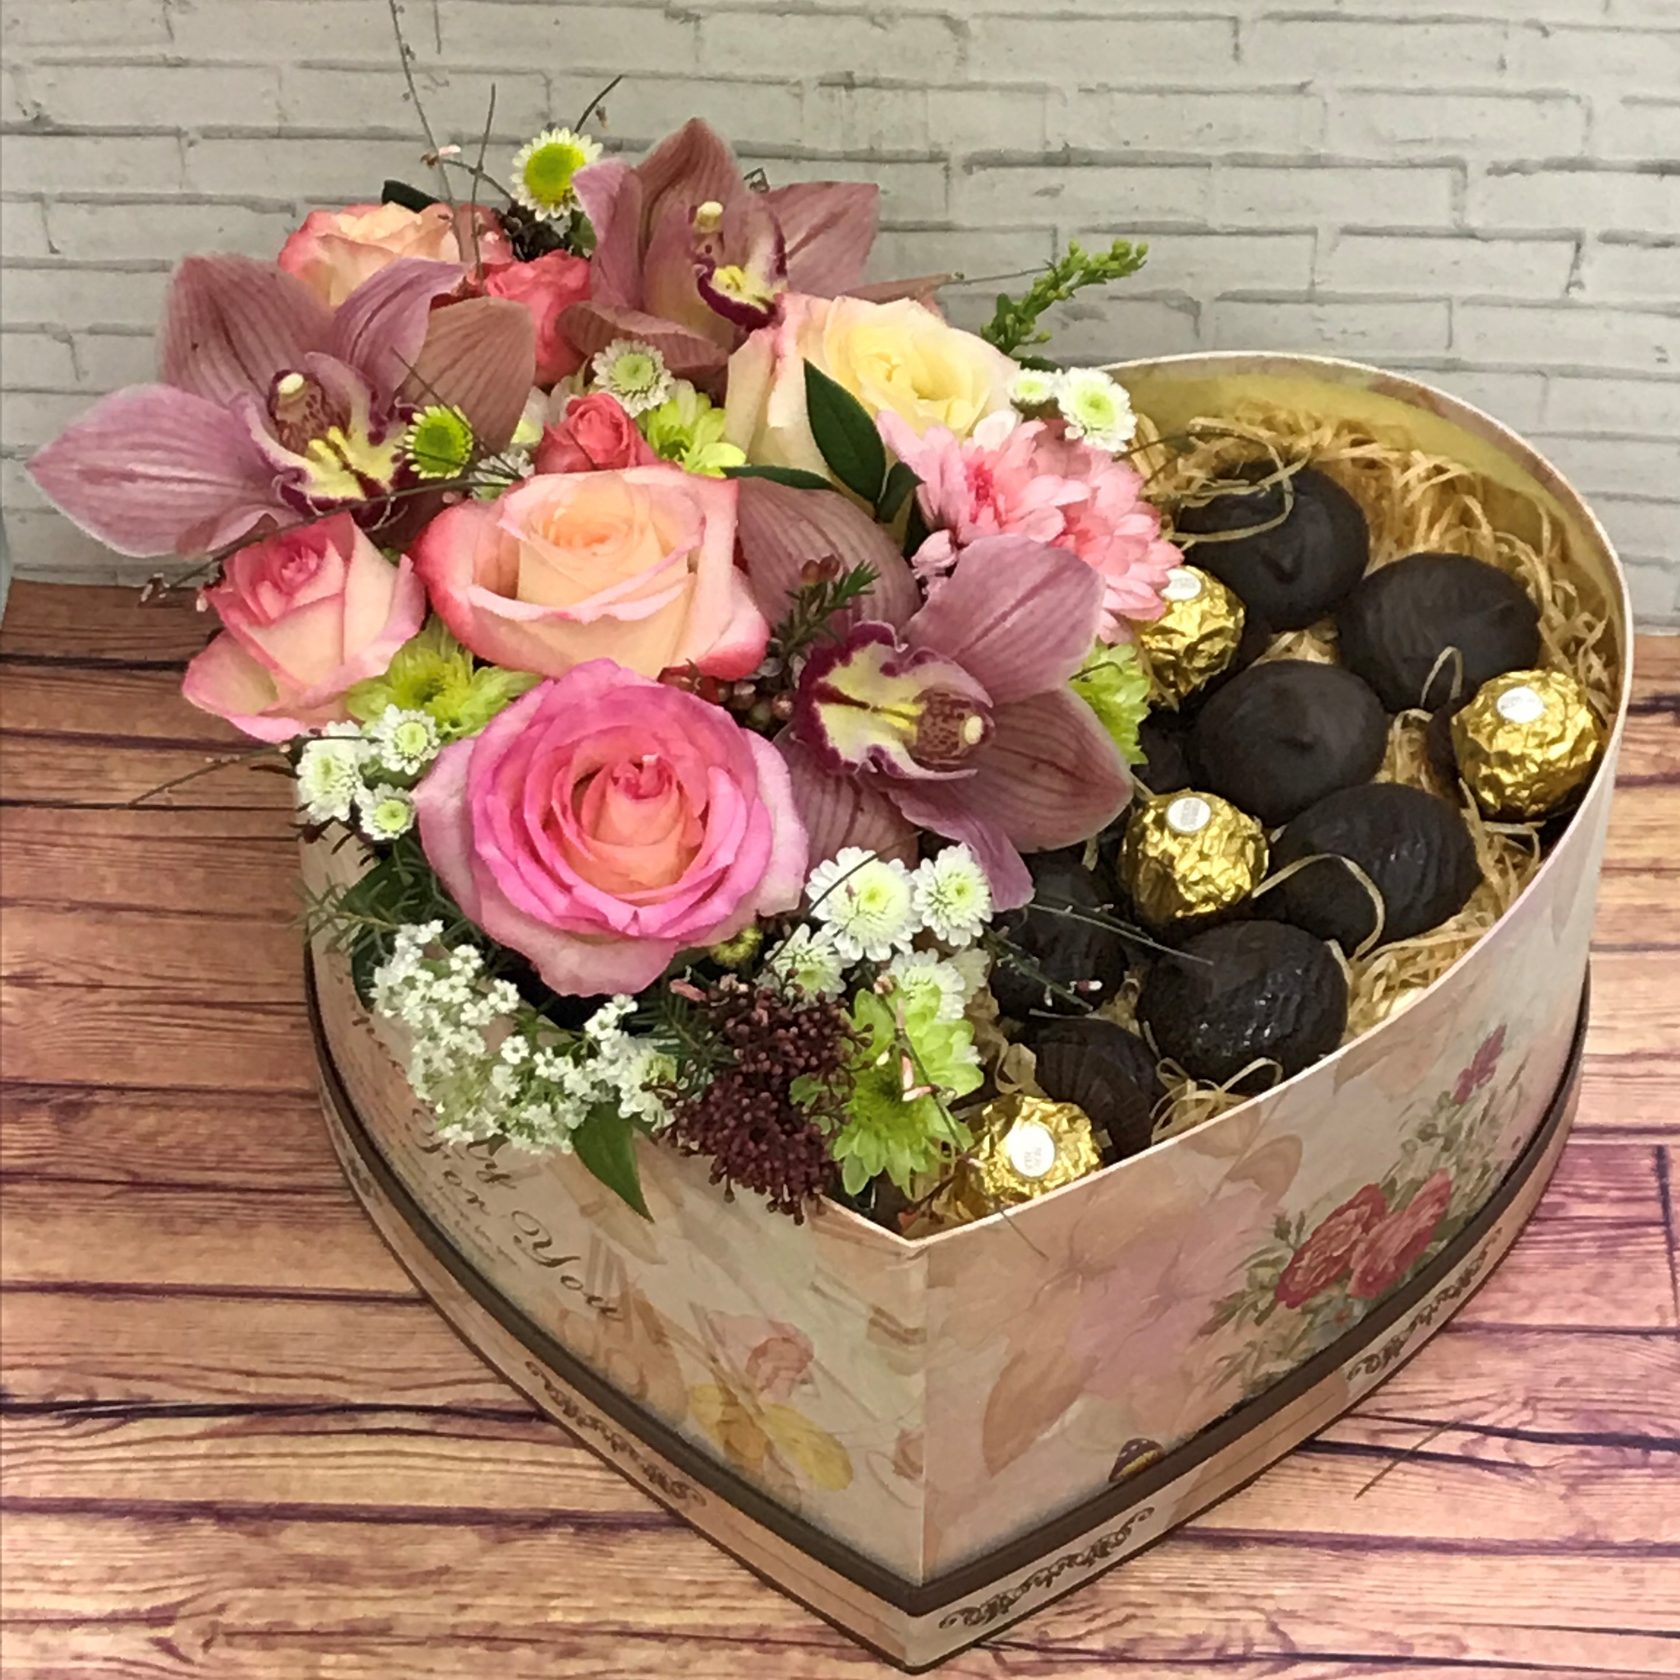 Сладкие подарки. Цветы и конфеты в коробке в виде сердца. Композиция Моей сладкой